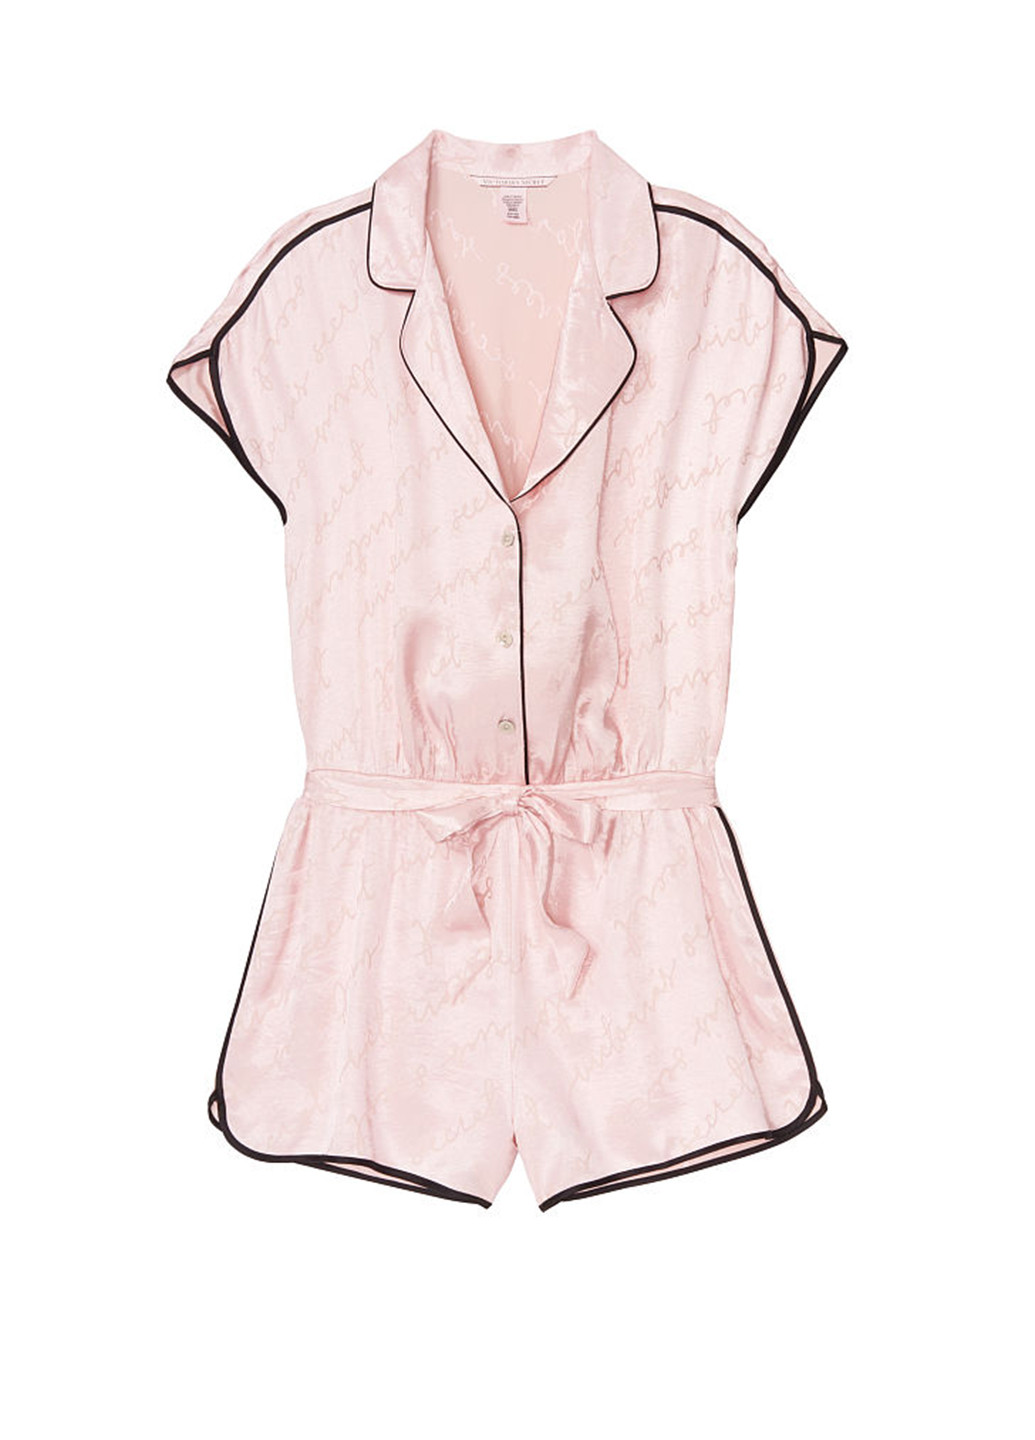 Комбінезон Victoria's Secret комбінезон-шорти світло-рожевий домашній віскоза, сатин